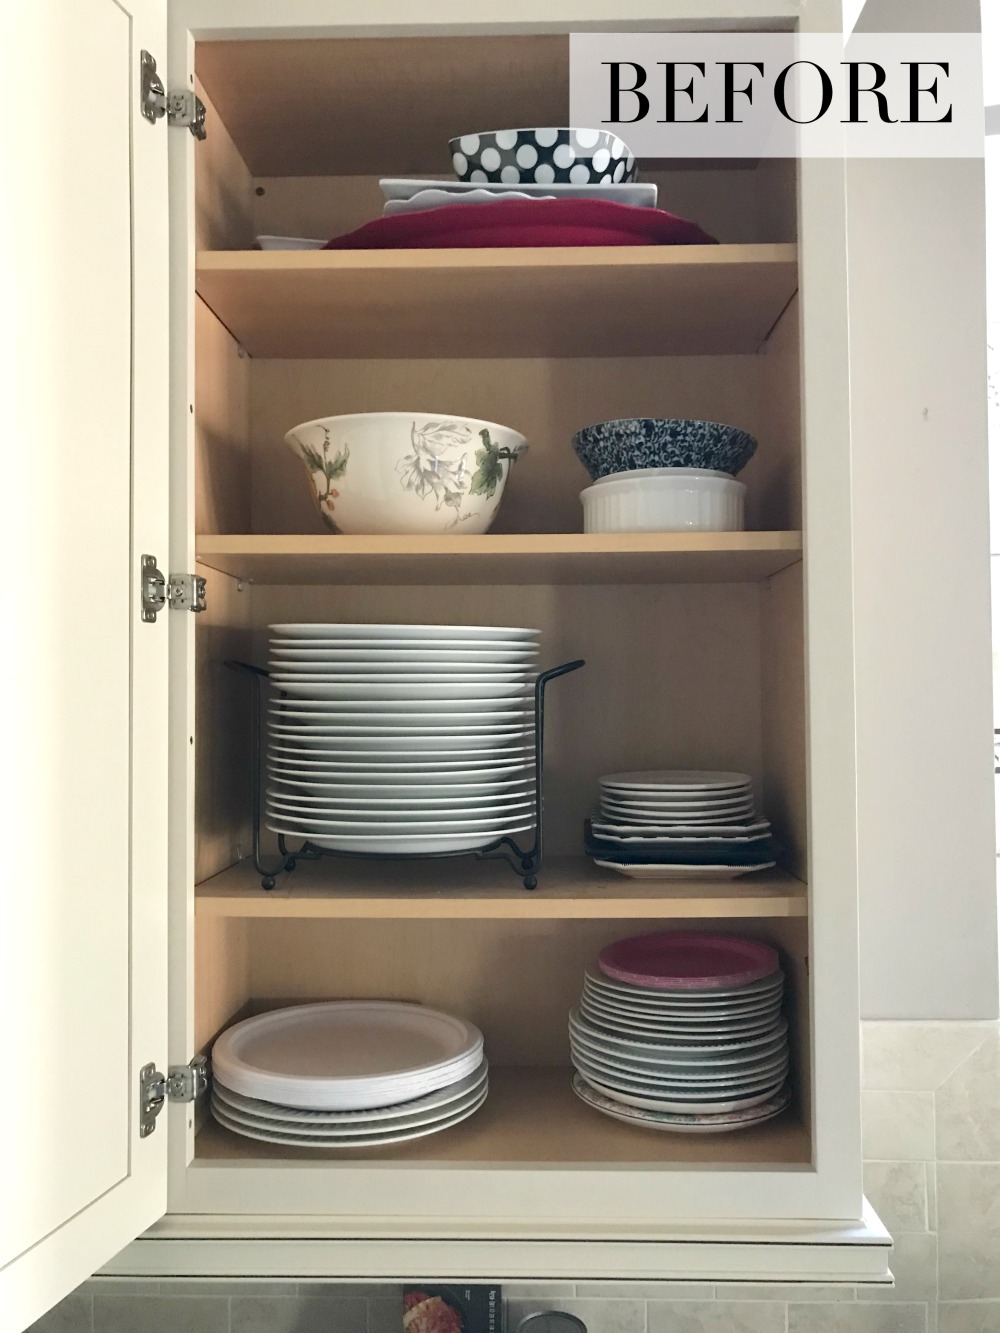 Before kitchen plates were organized